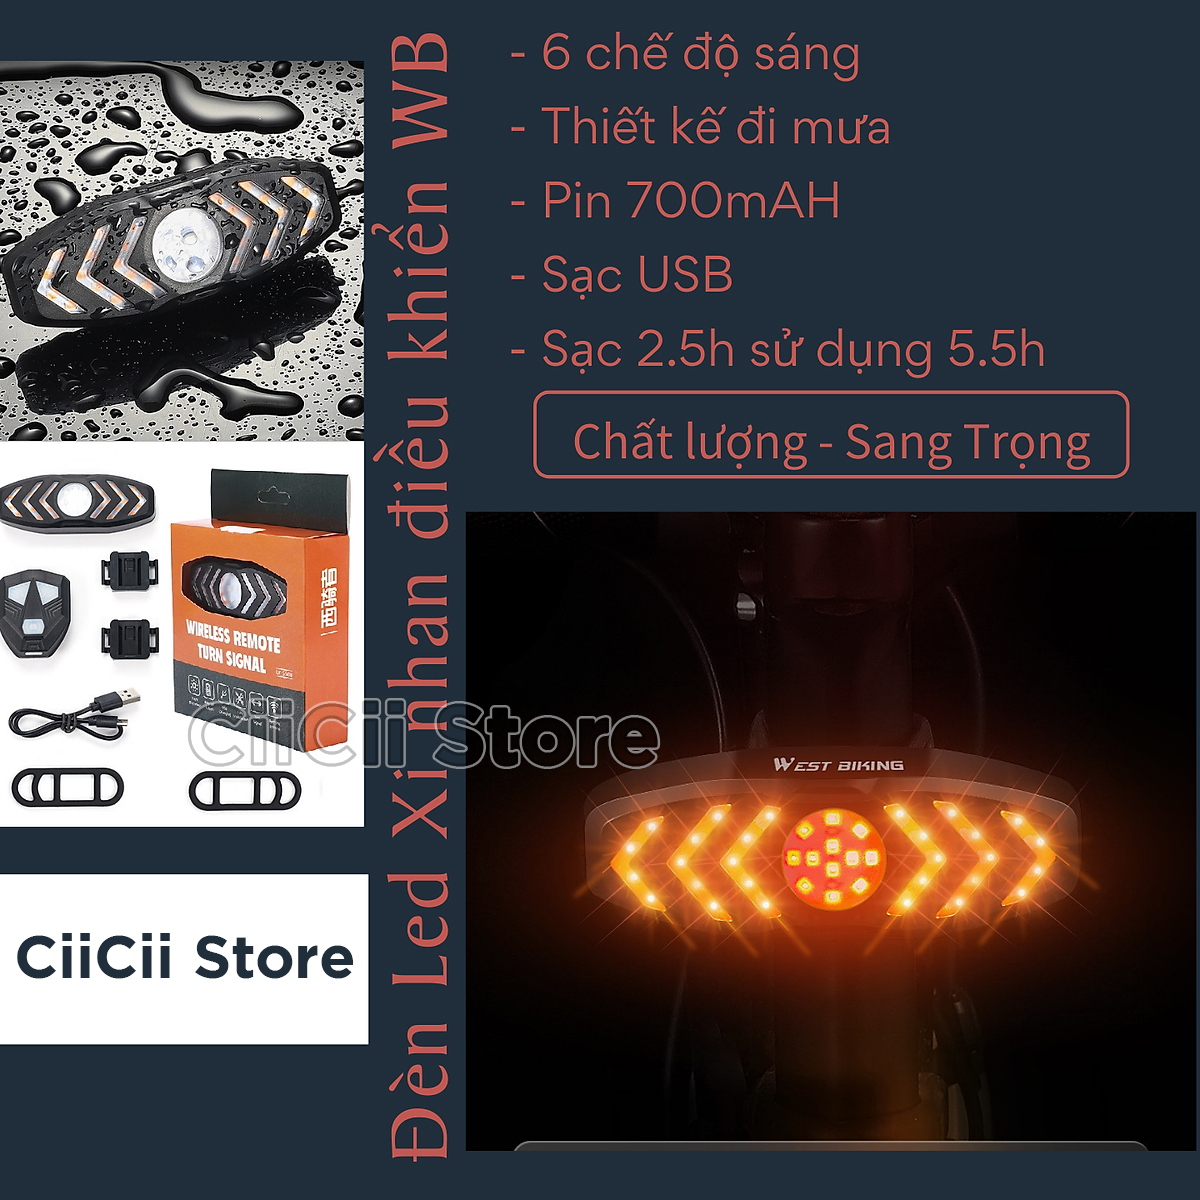 Đèn Hậu Xi Nhan Xe Đạp Điều Khiển Từ Xa, Cổng Sạc USB, Pin 700mAH Hàng Nhập Khẩu